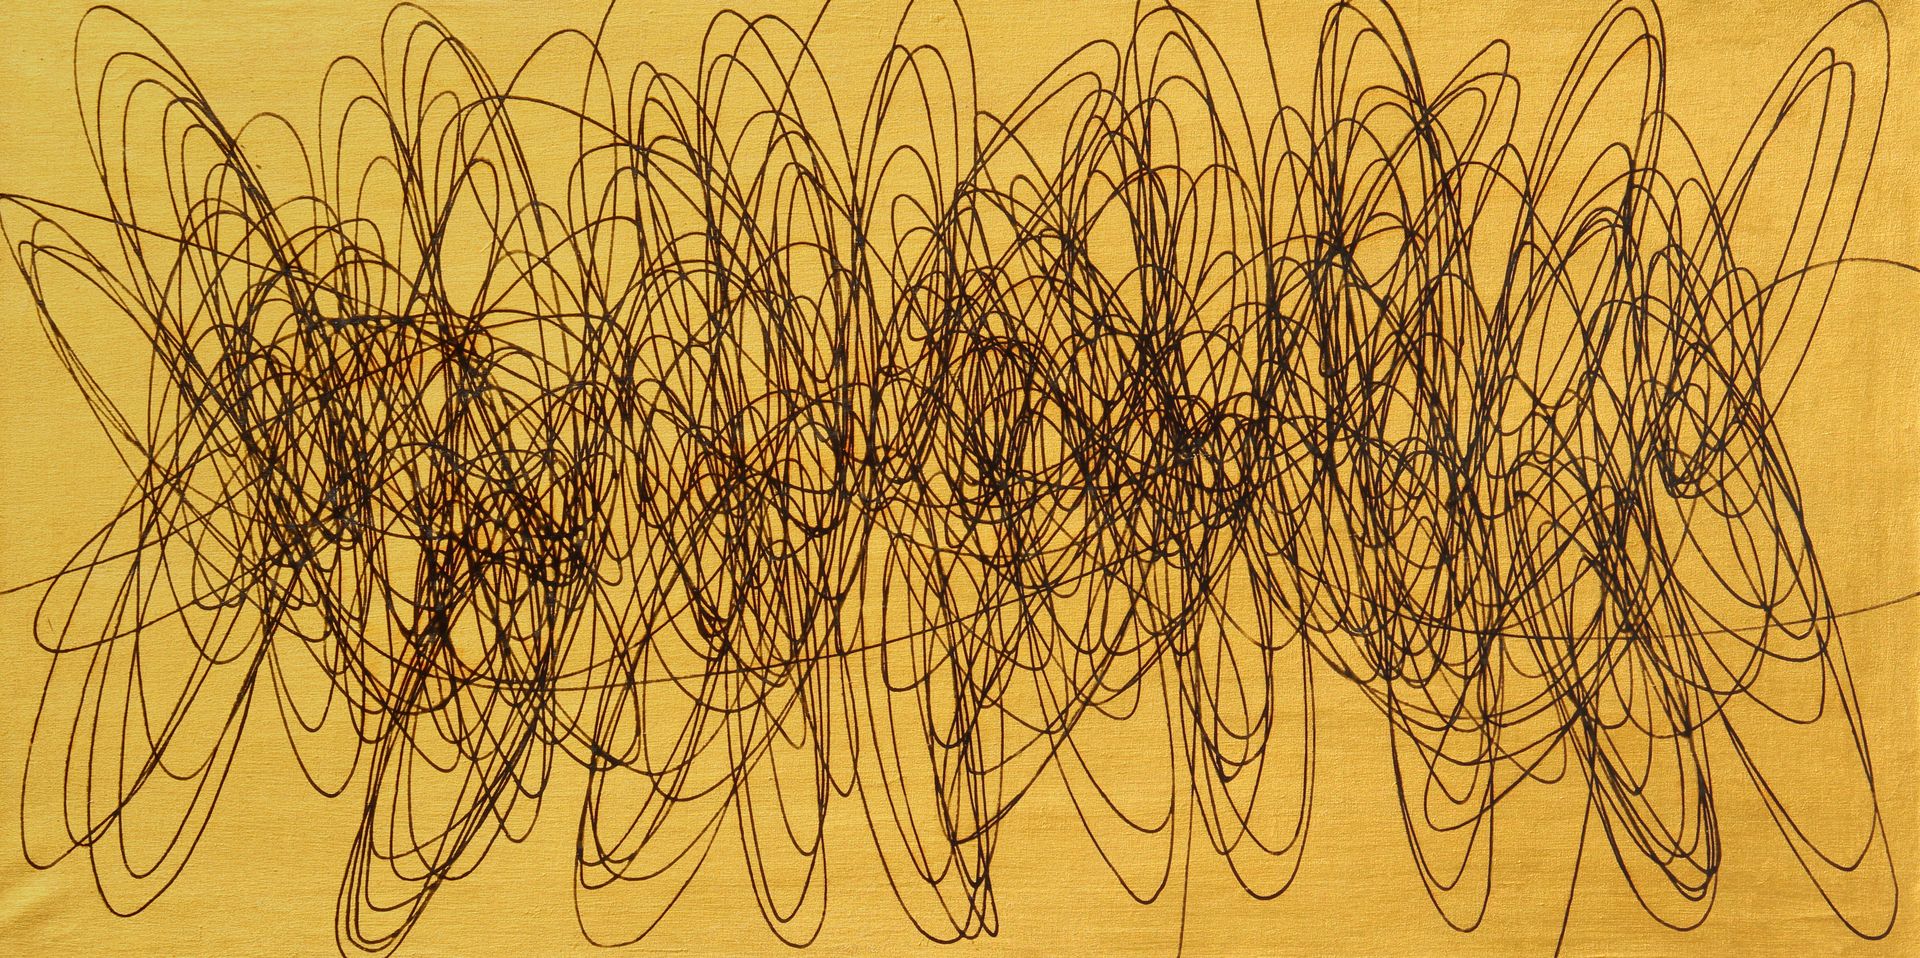 Roberto CRIPPA Spirale 1951, Öl auf Leinwand, cm. 60x120

Zertifikat von Roberto&hellip;